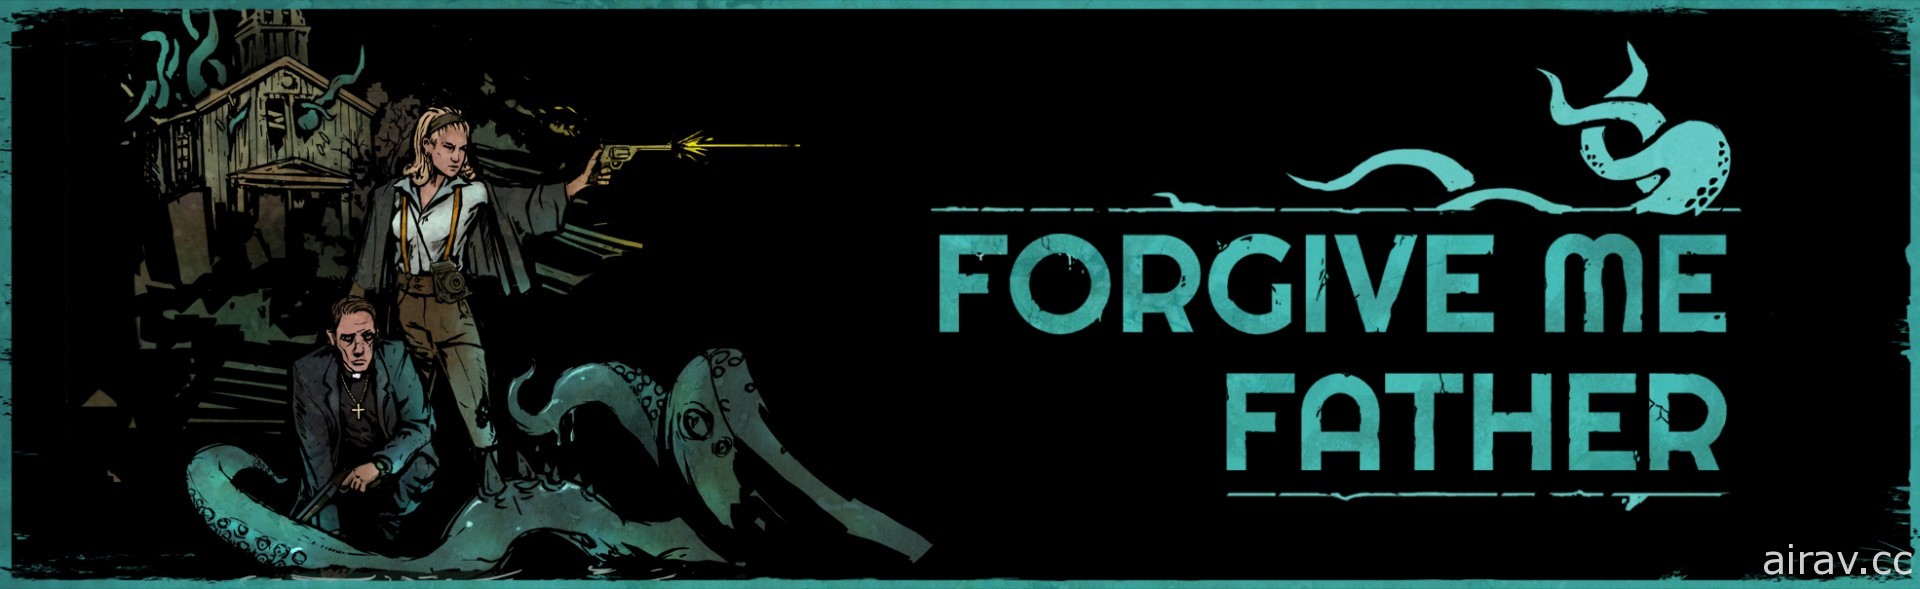 90 年代復古 FPS 恐怖遊戲《神啊原諒我》於 Steam 新品節開放試玩版